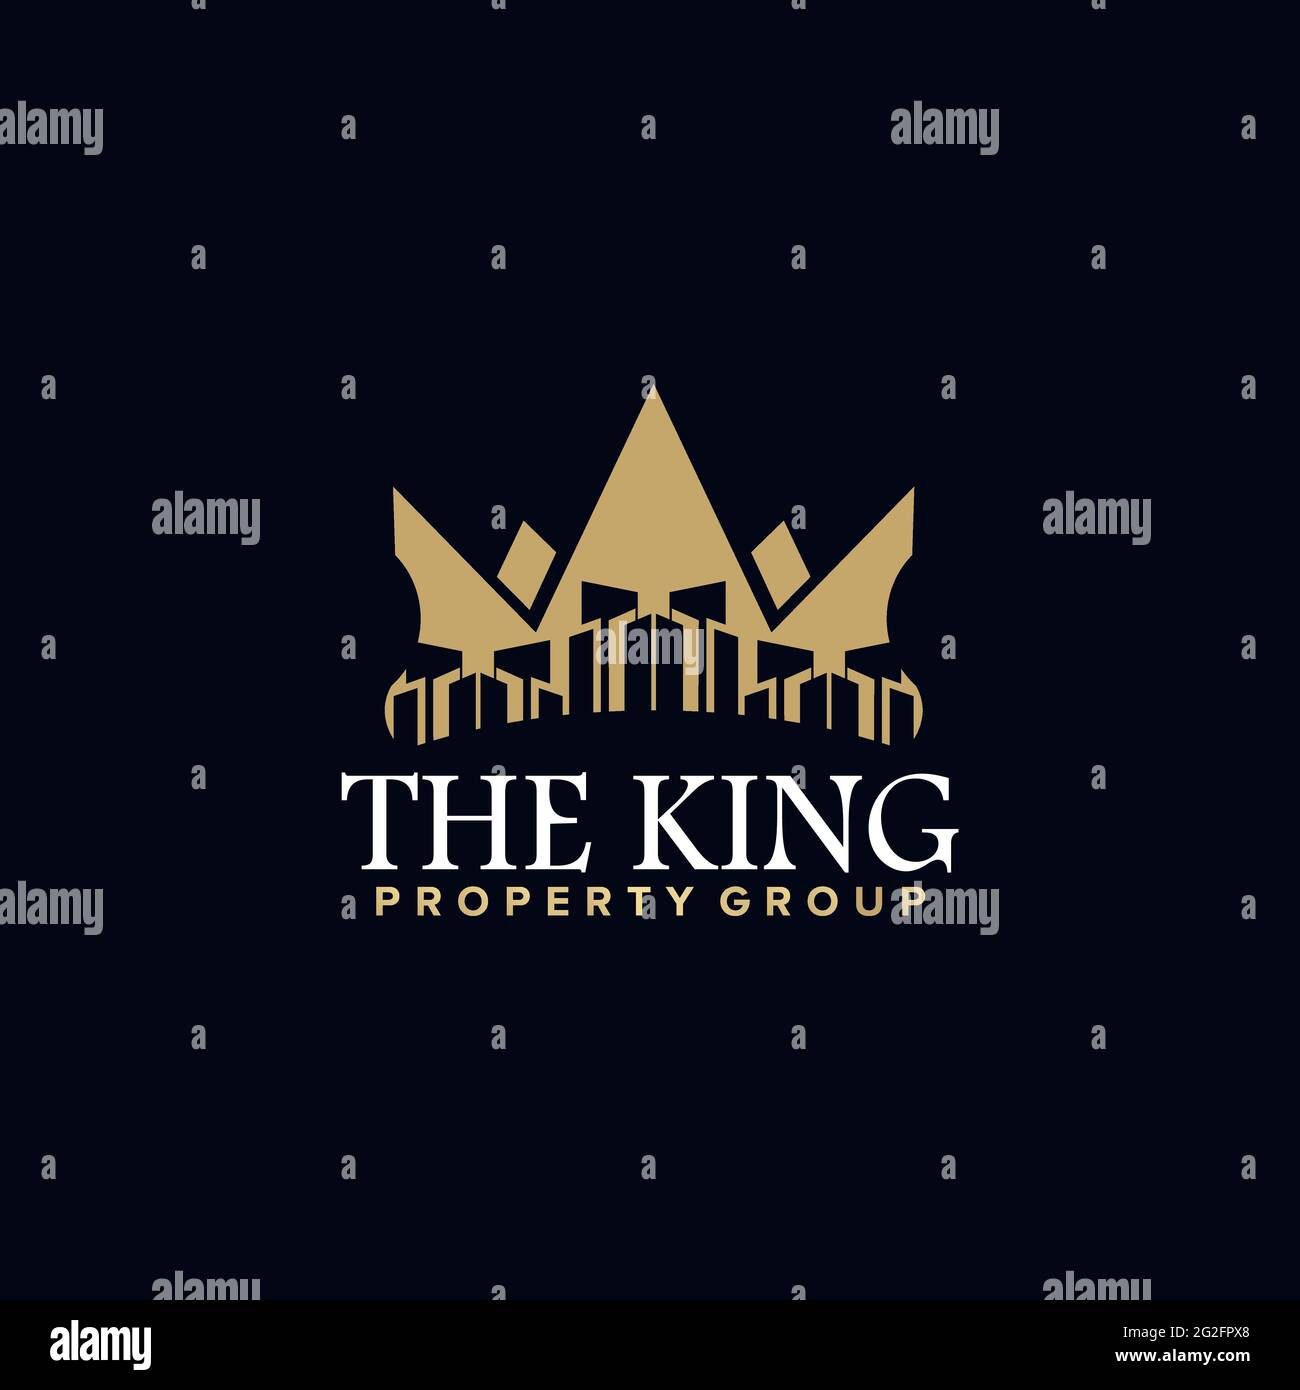 Plantilla vectorial de diseño de logotipo de la propiedad King Ilustración del Vector